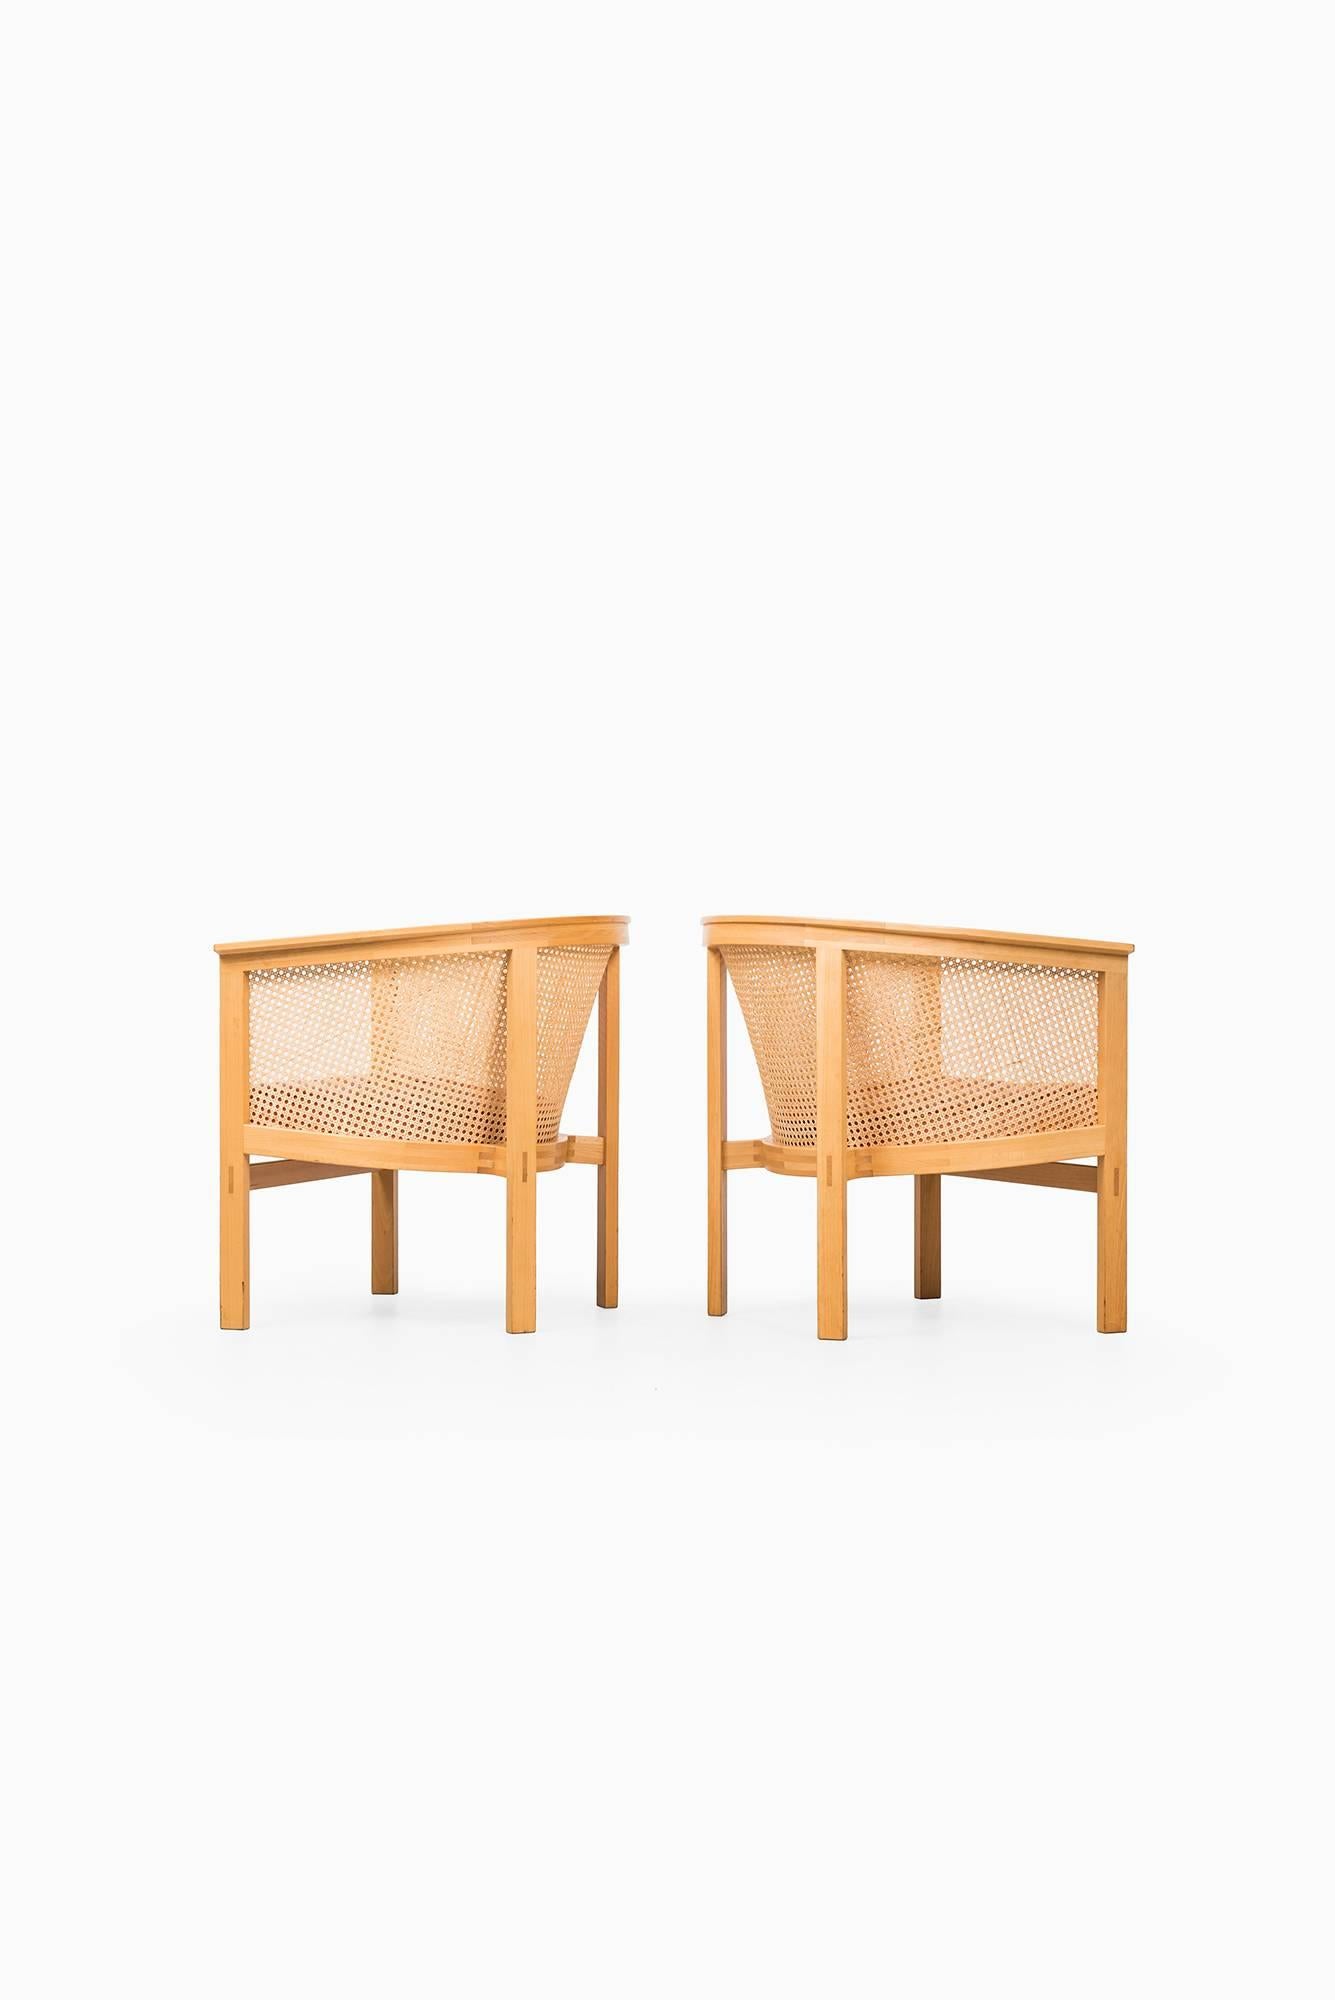 Scandinavian Modern Rud Thygesen & Johnny Sørensen Easy Chairs Model 7701 by Botium in Denmark